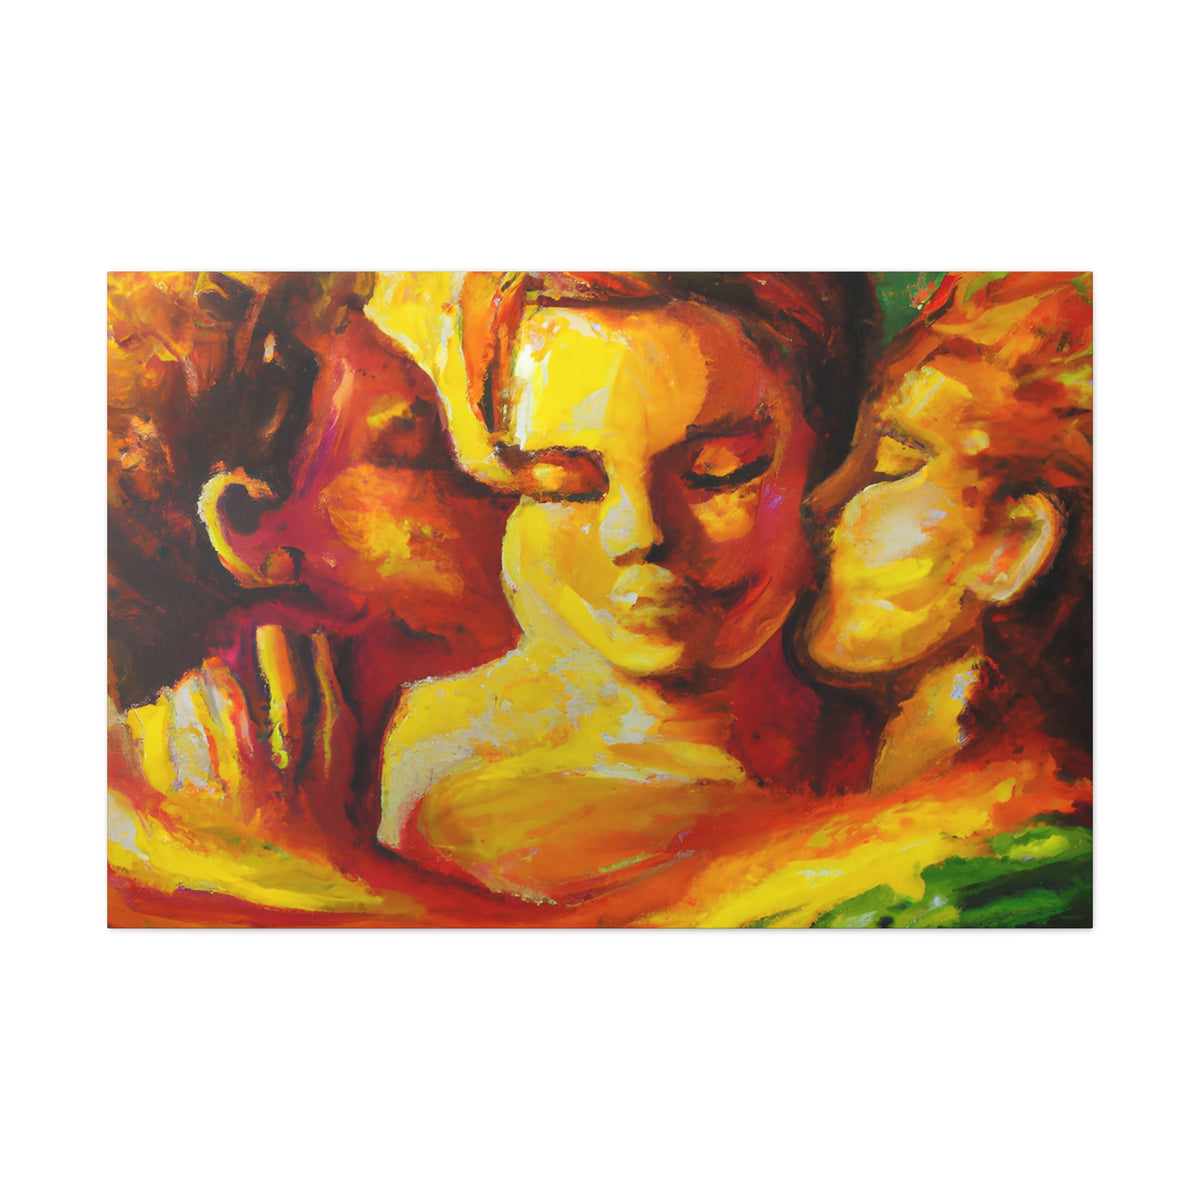 Lex - Gay Love Canvas Art